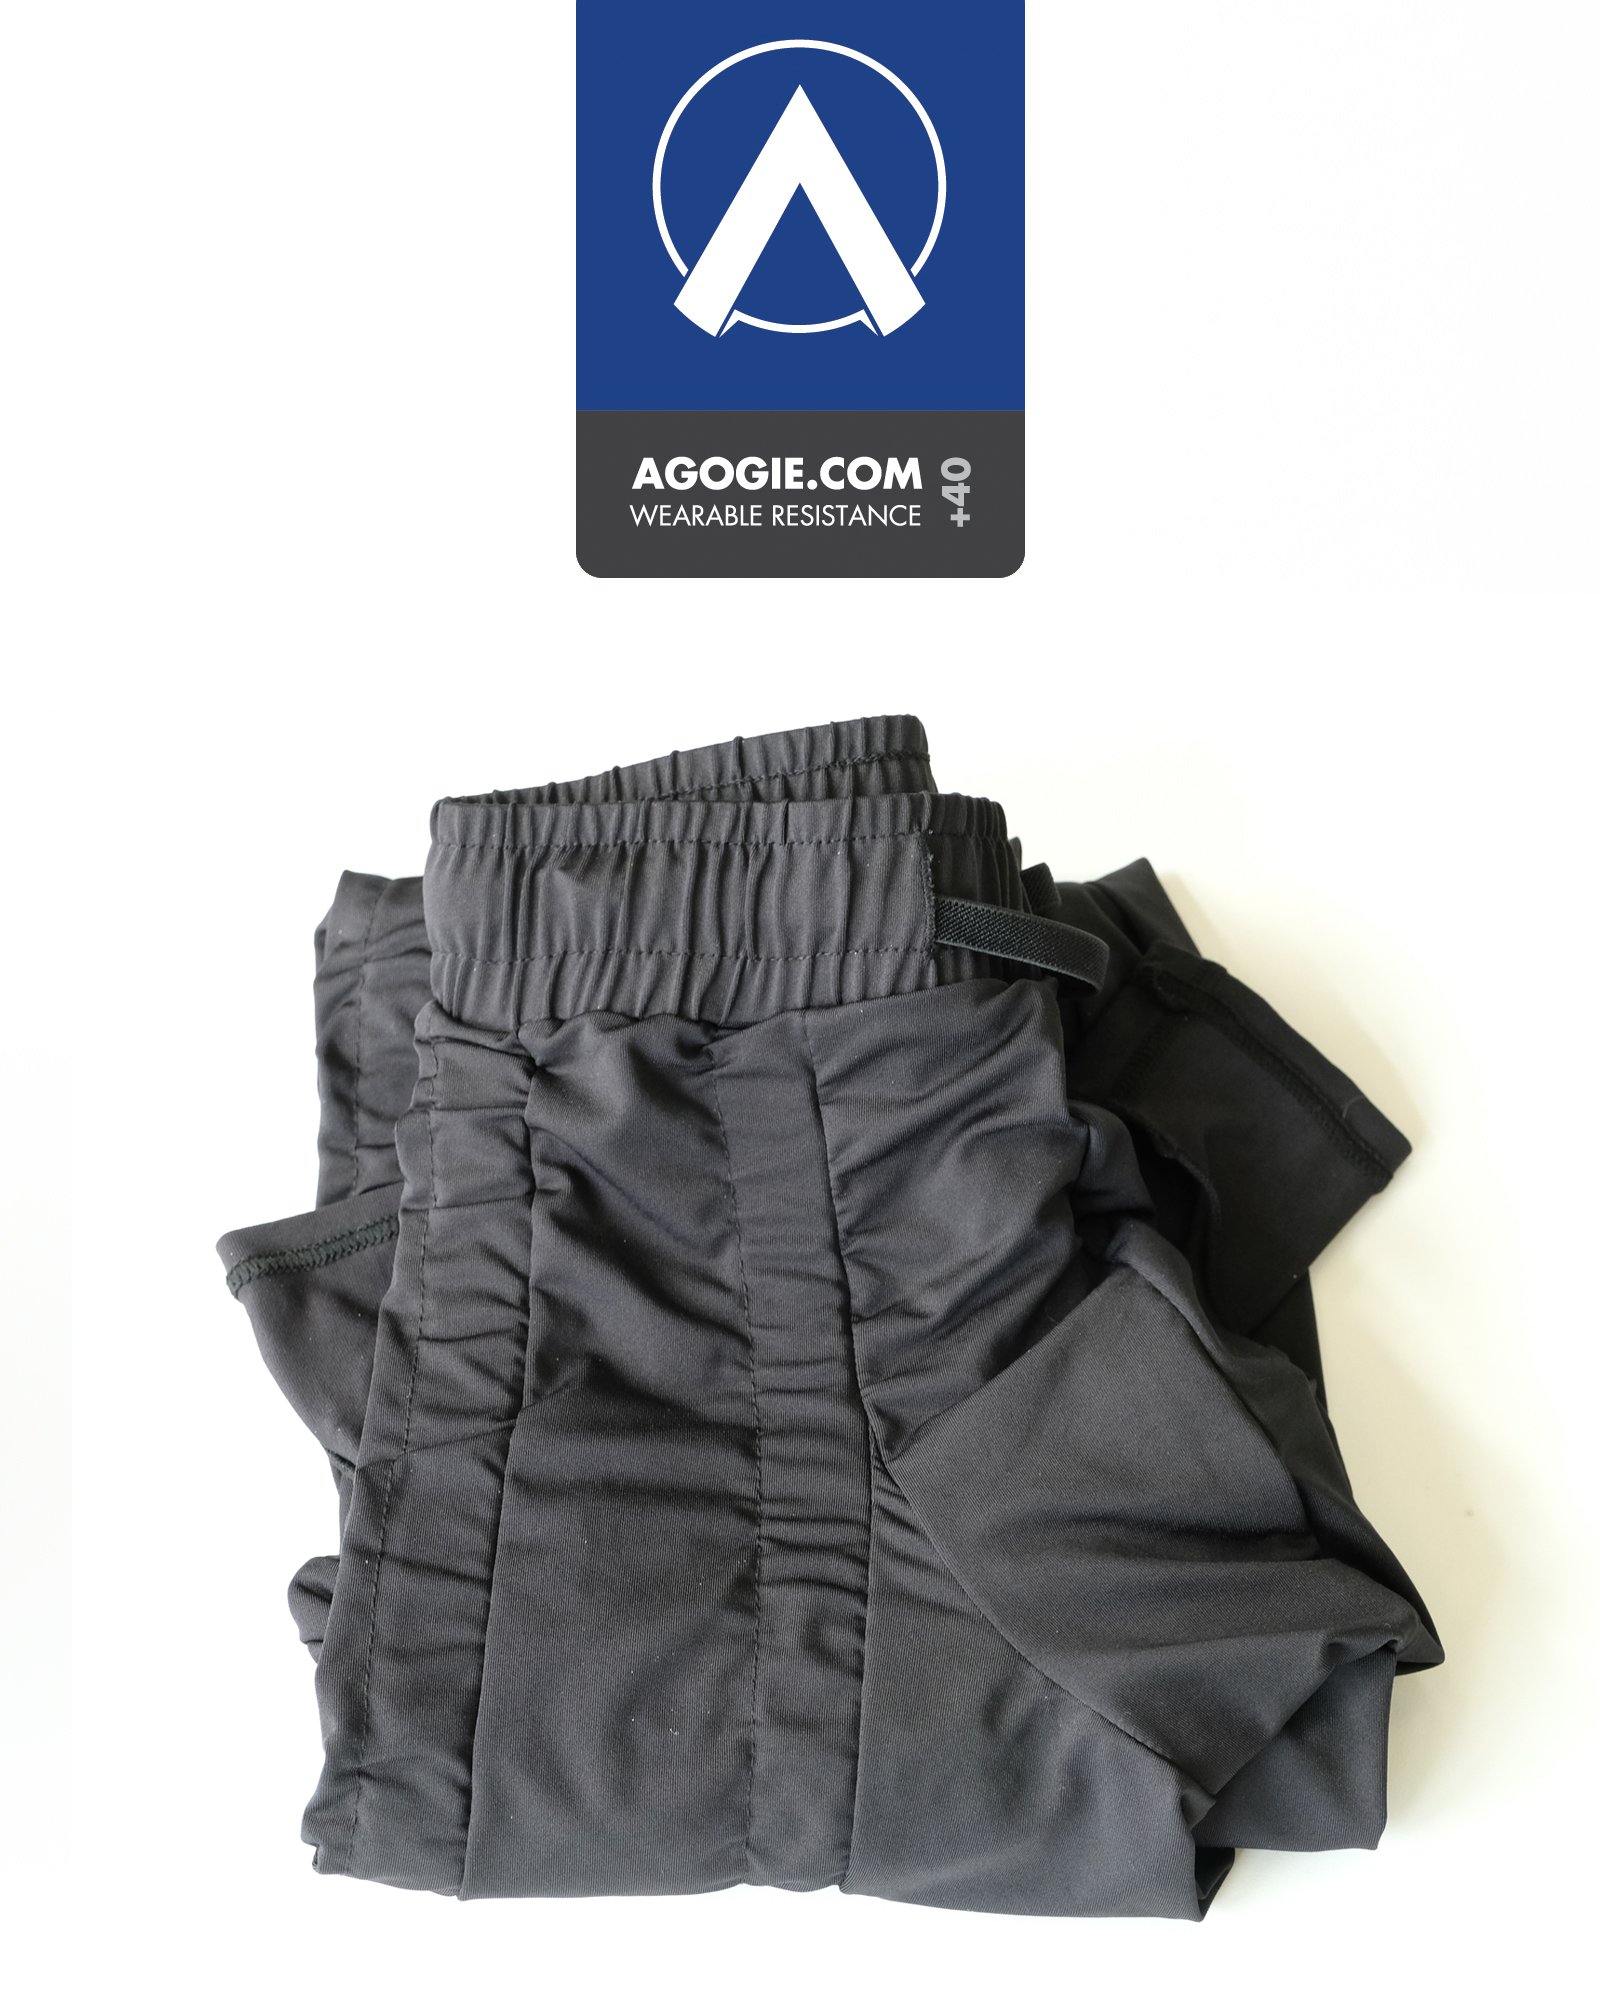 Men's +40 Resistance Pants by AGOGIE